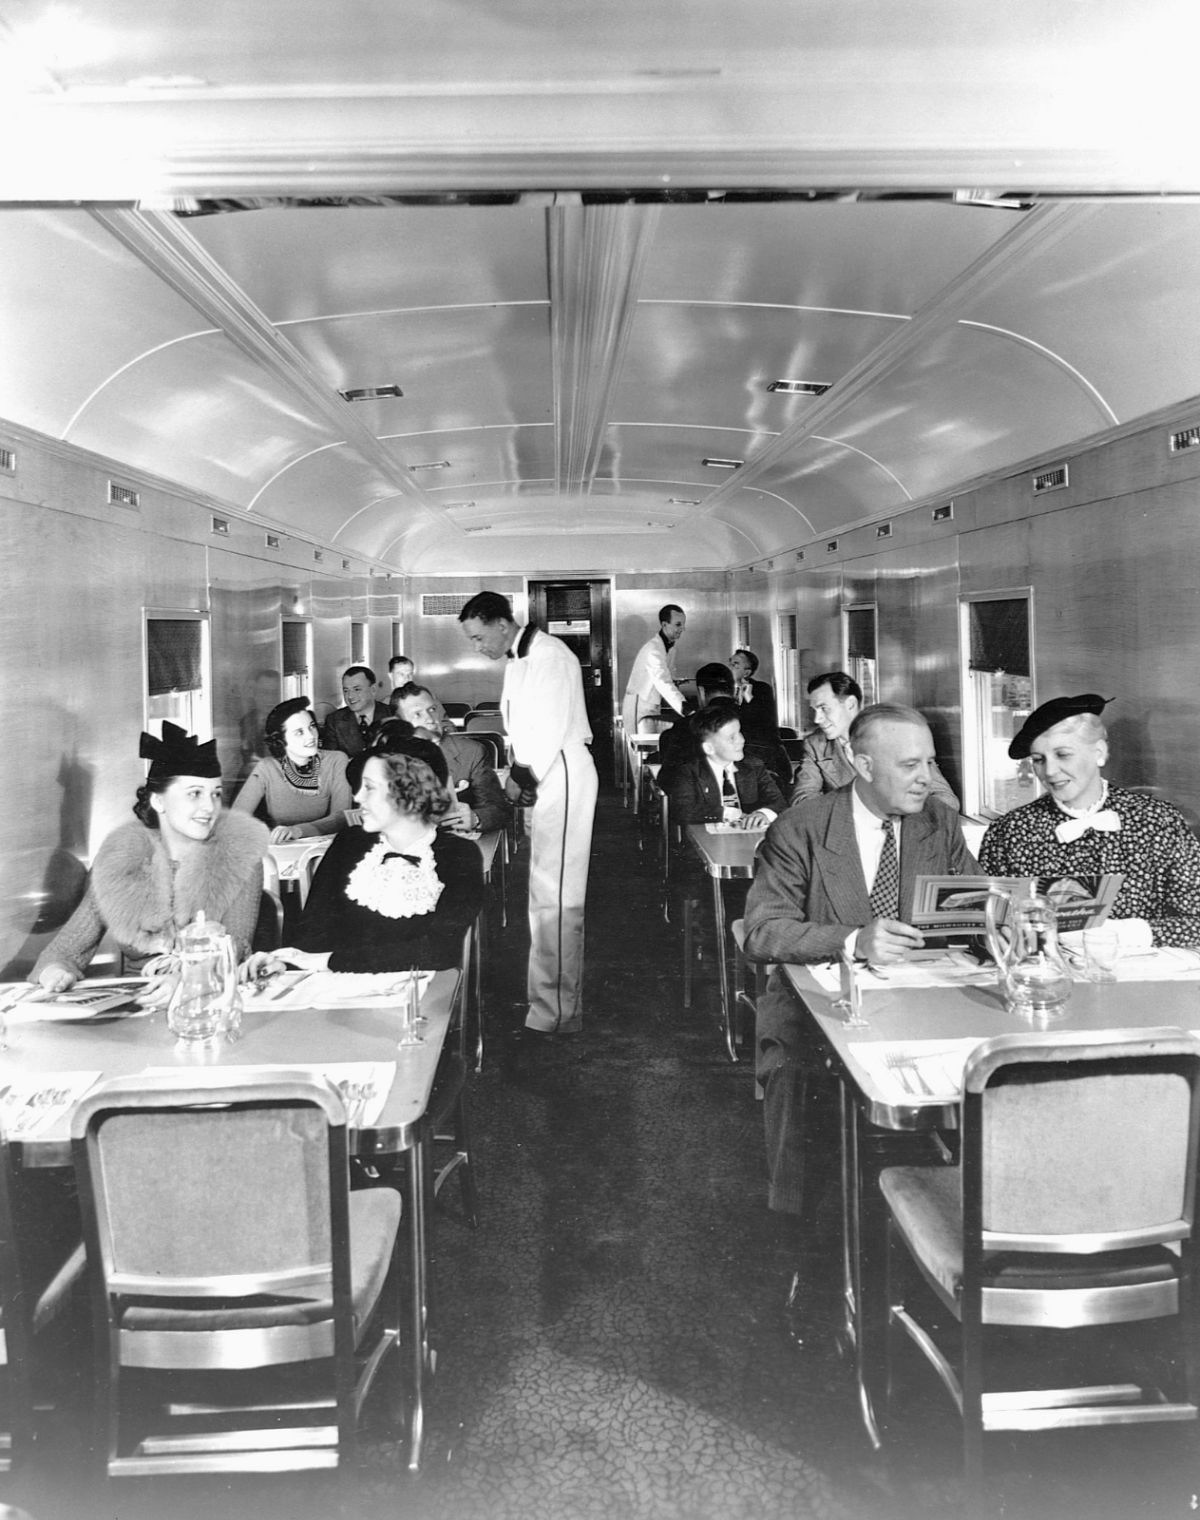 Fotos antigas mostram como eram glamorosas as viagens de trem entre 1900-1940 16